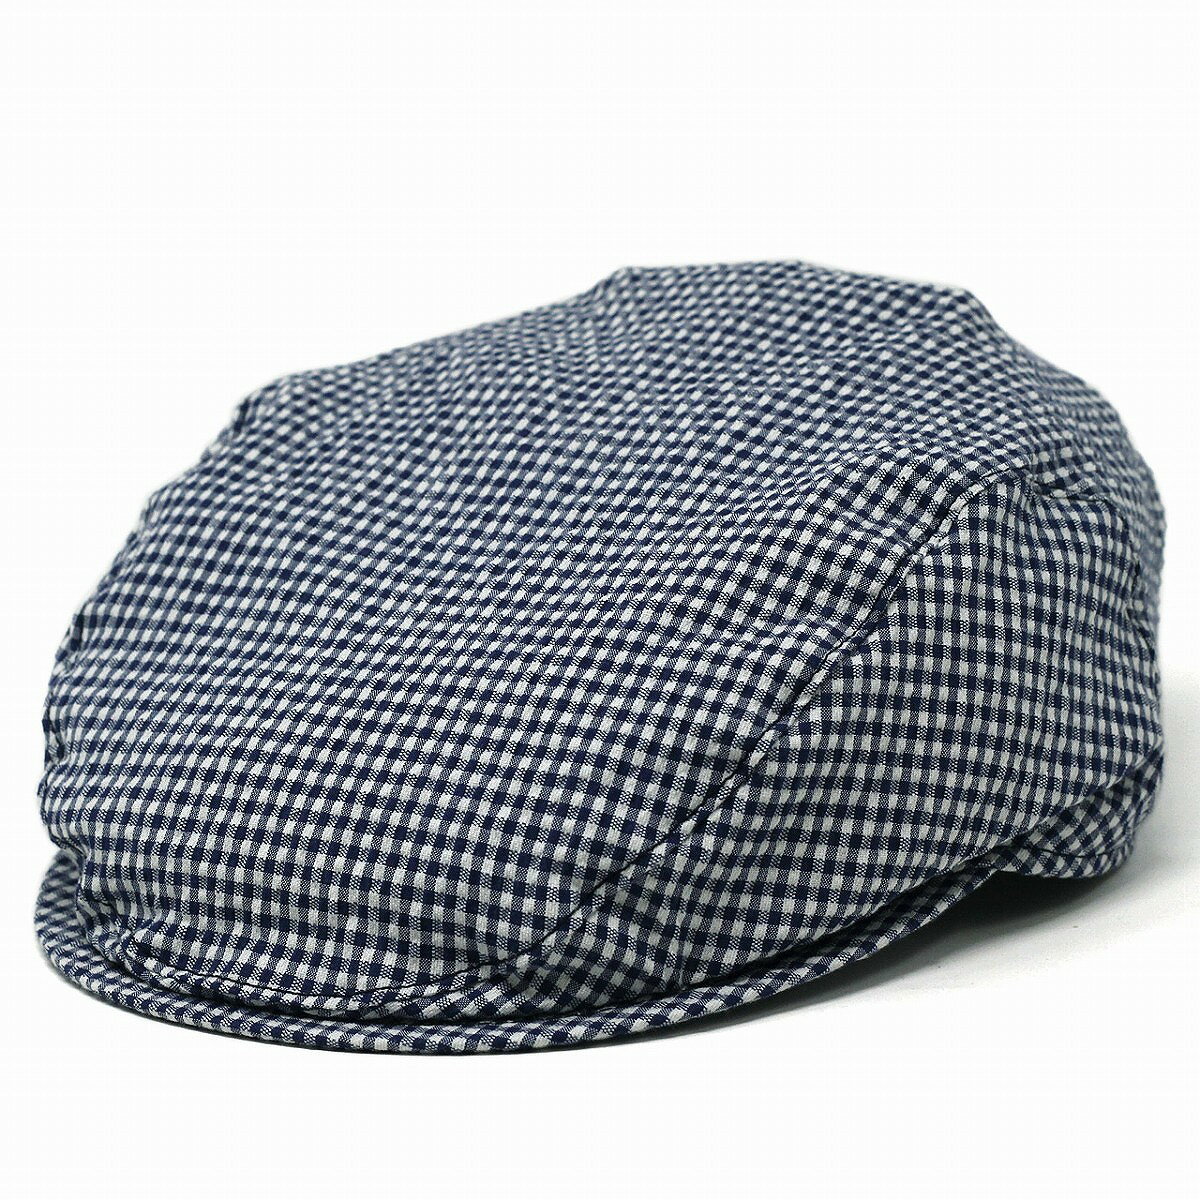 ハンチング帽 WIGENS メンズ ギンガムチェック 帽子 大きいサイズ ライニング メッシュ ヴィゲン IVY SLIM CAP インポート 春夏 ヴィーゲン ハンチング ギンガムチェック プレゼント 男性 父の日 ギフト ラッピング無料 [ ivy cap ]